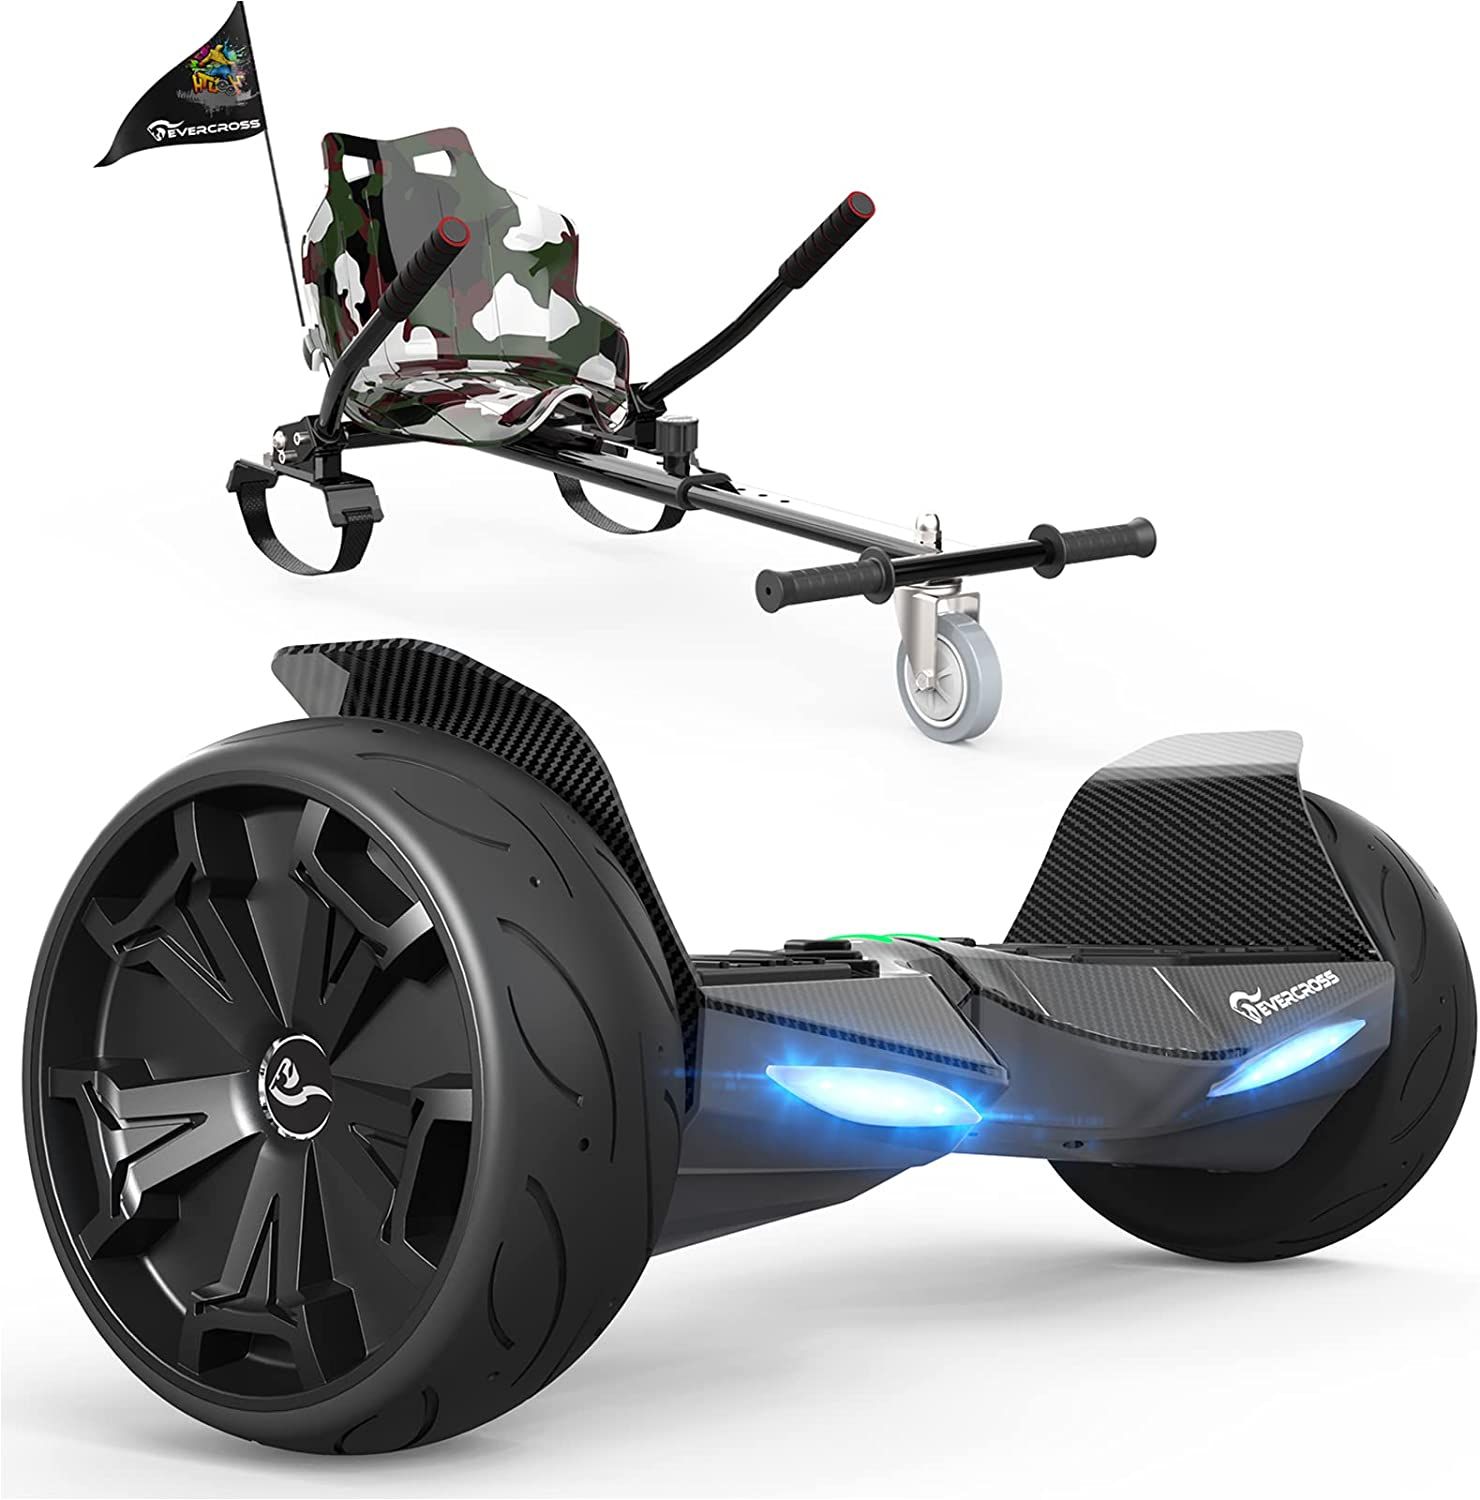 Evercross Hoverboard Avec Kart, Hoverboard De 8,5 Pouces Bluetooth, Contrôle App, Scooter Auto-Équilibrant Tout Terrain